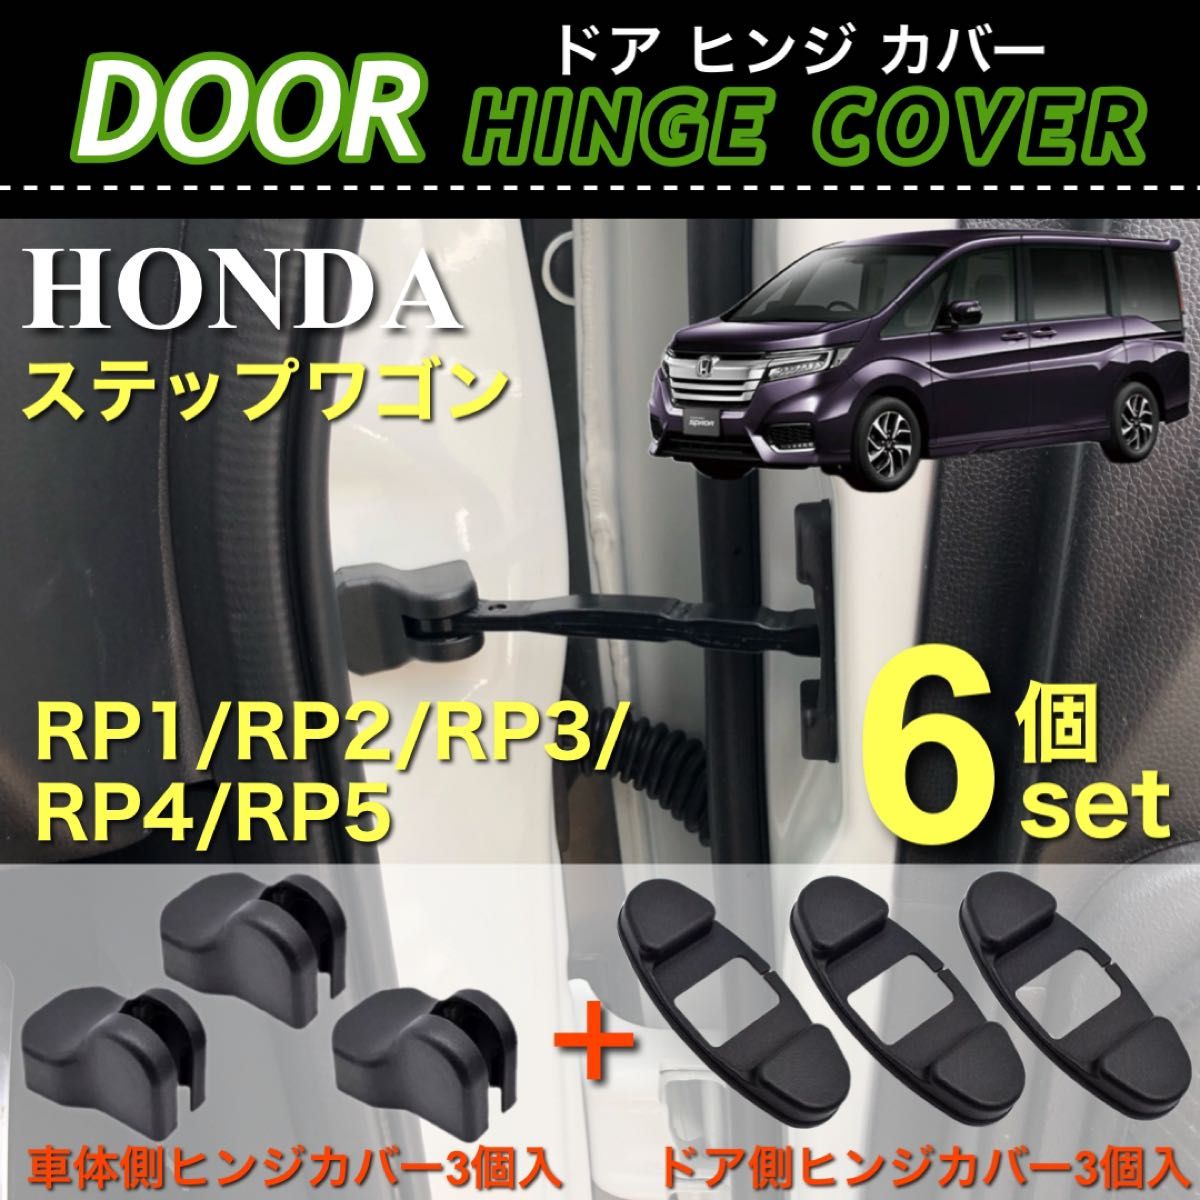 ステップワゴン RP1 RP2 RP3 RP4 RP5 ドア ストッパー カバー ドア ヒンジカバー 車体側 ドア側 6点セット